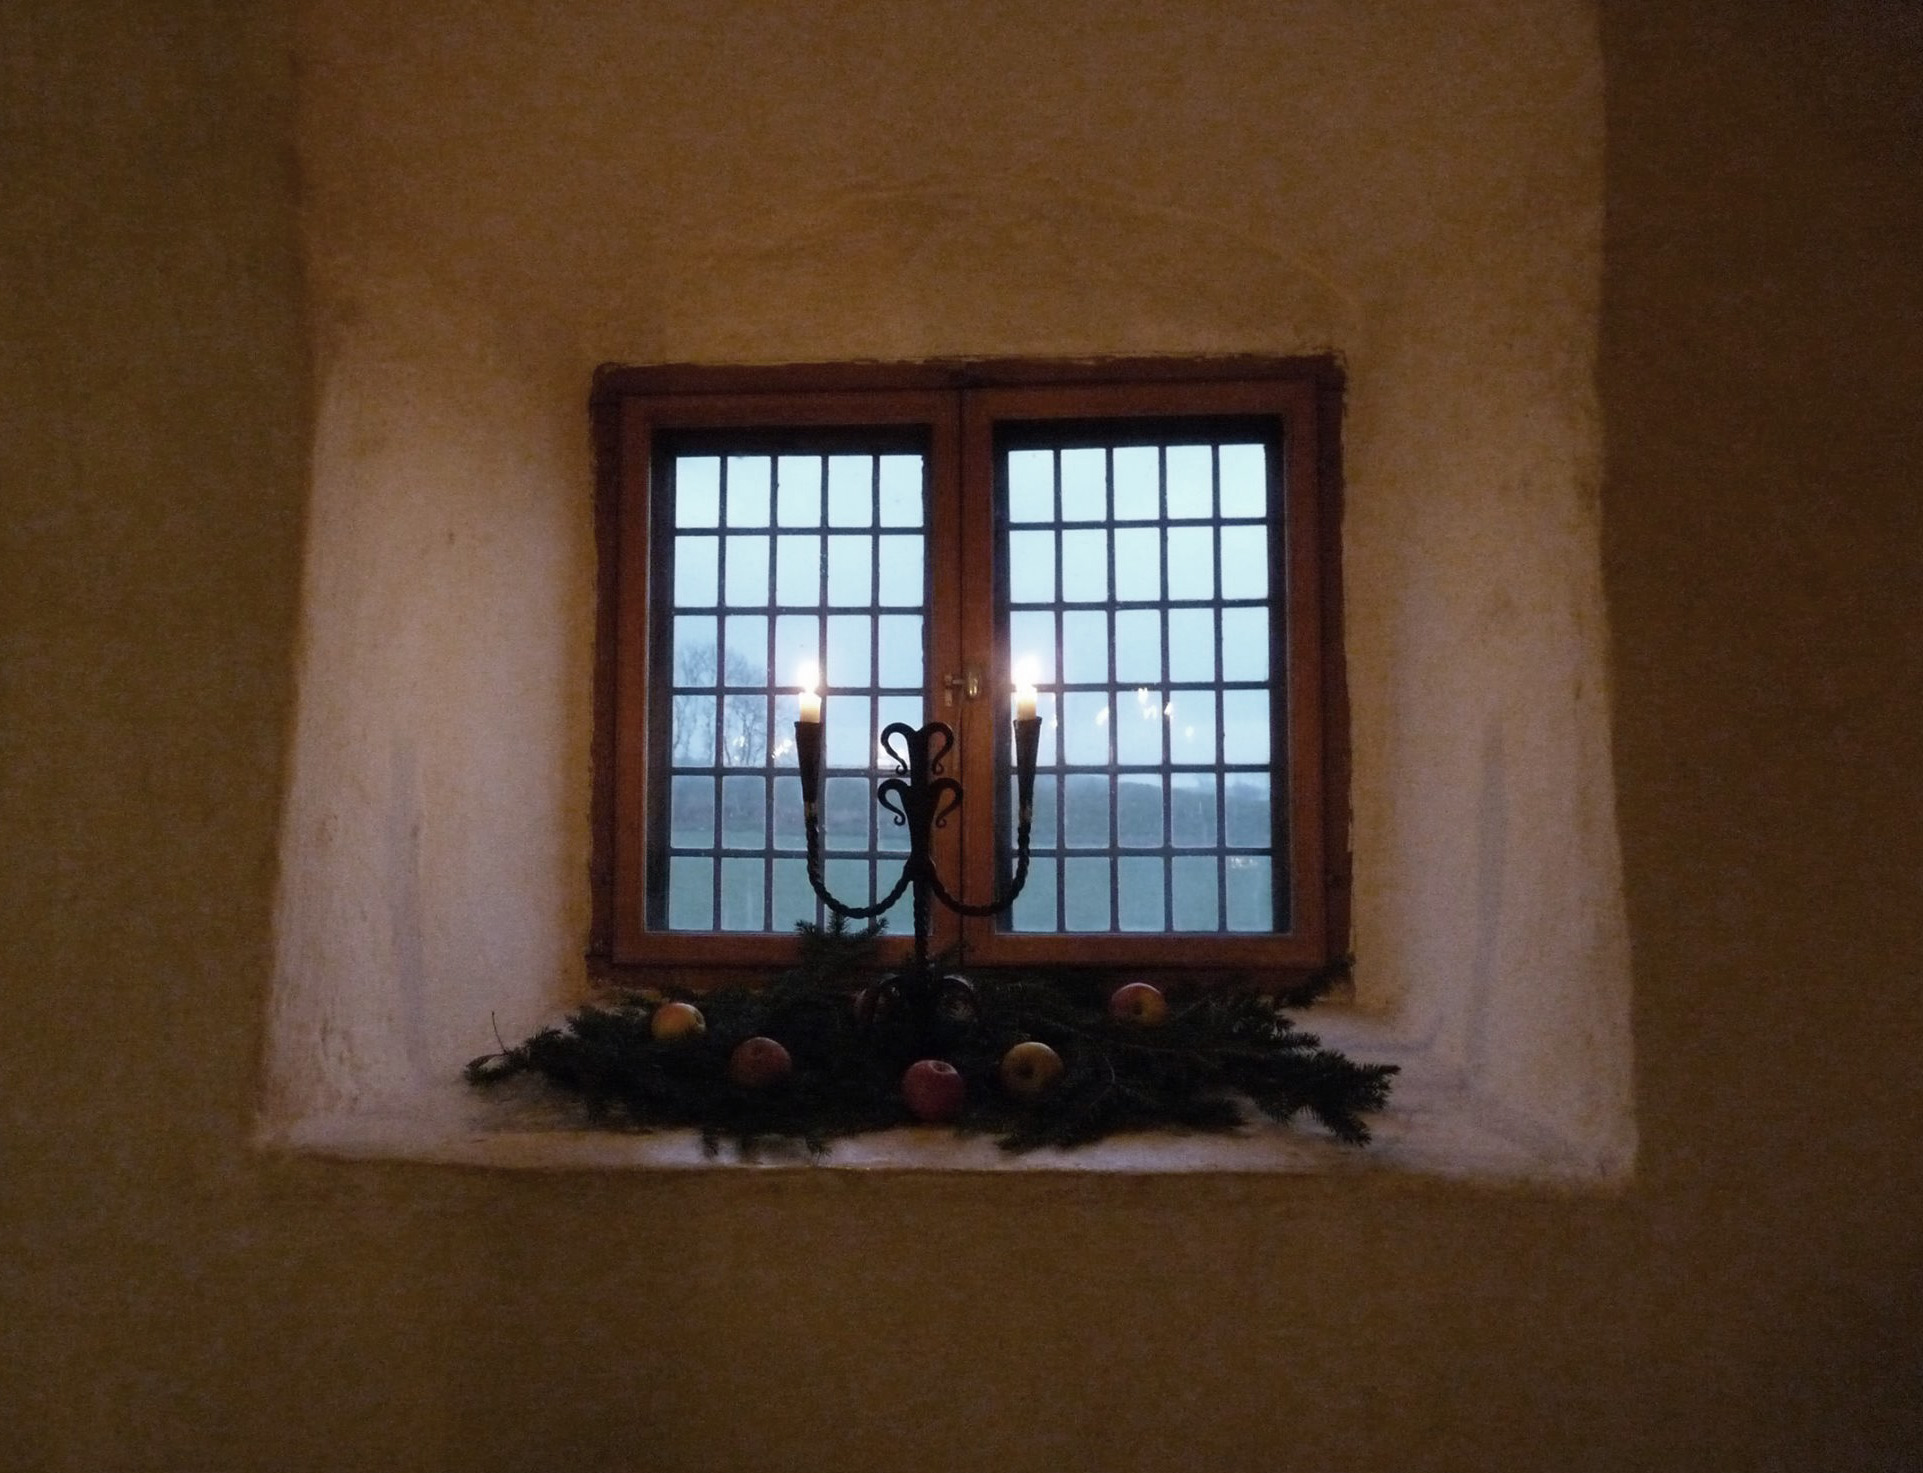 Ett djupt sittande fönster i en vitputsad vägg. I fönstret ligger granris med röda äpplen och i en ljusstake brinner ett ljus.